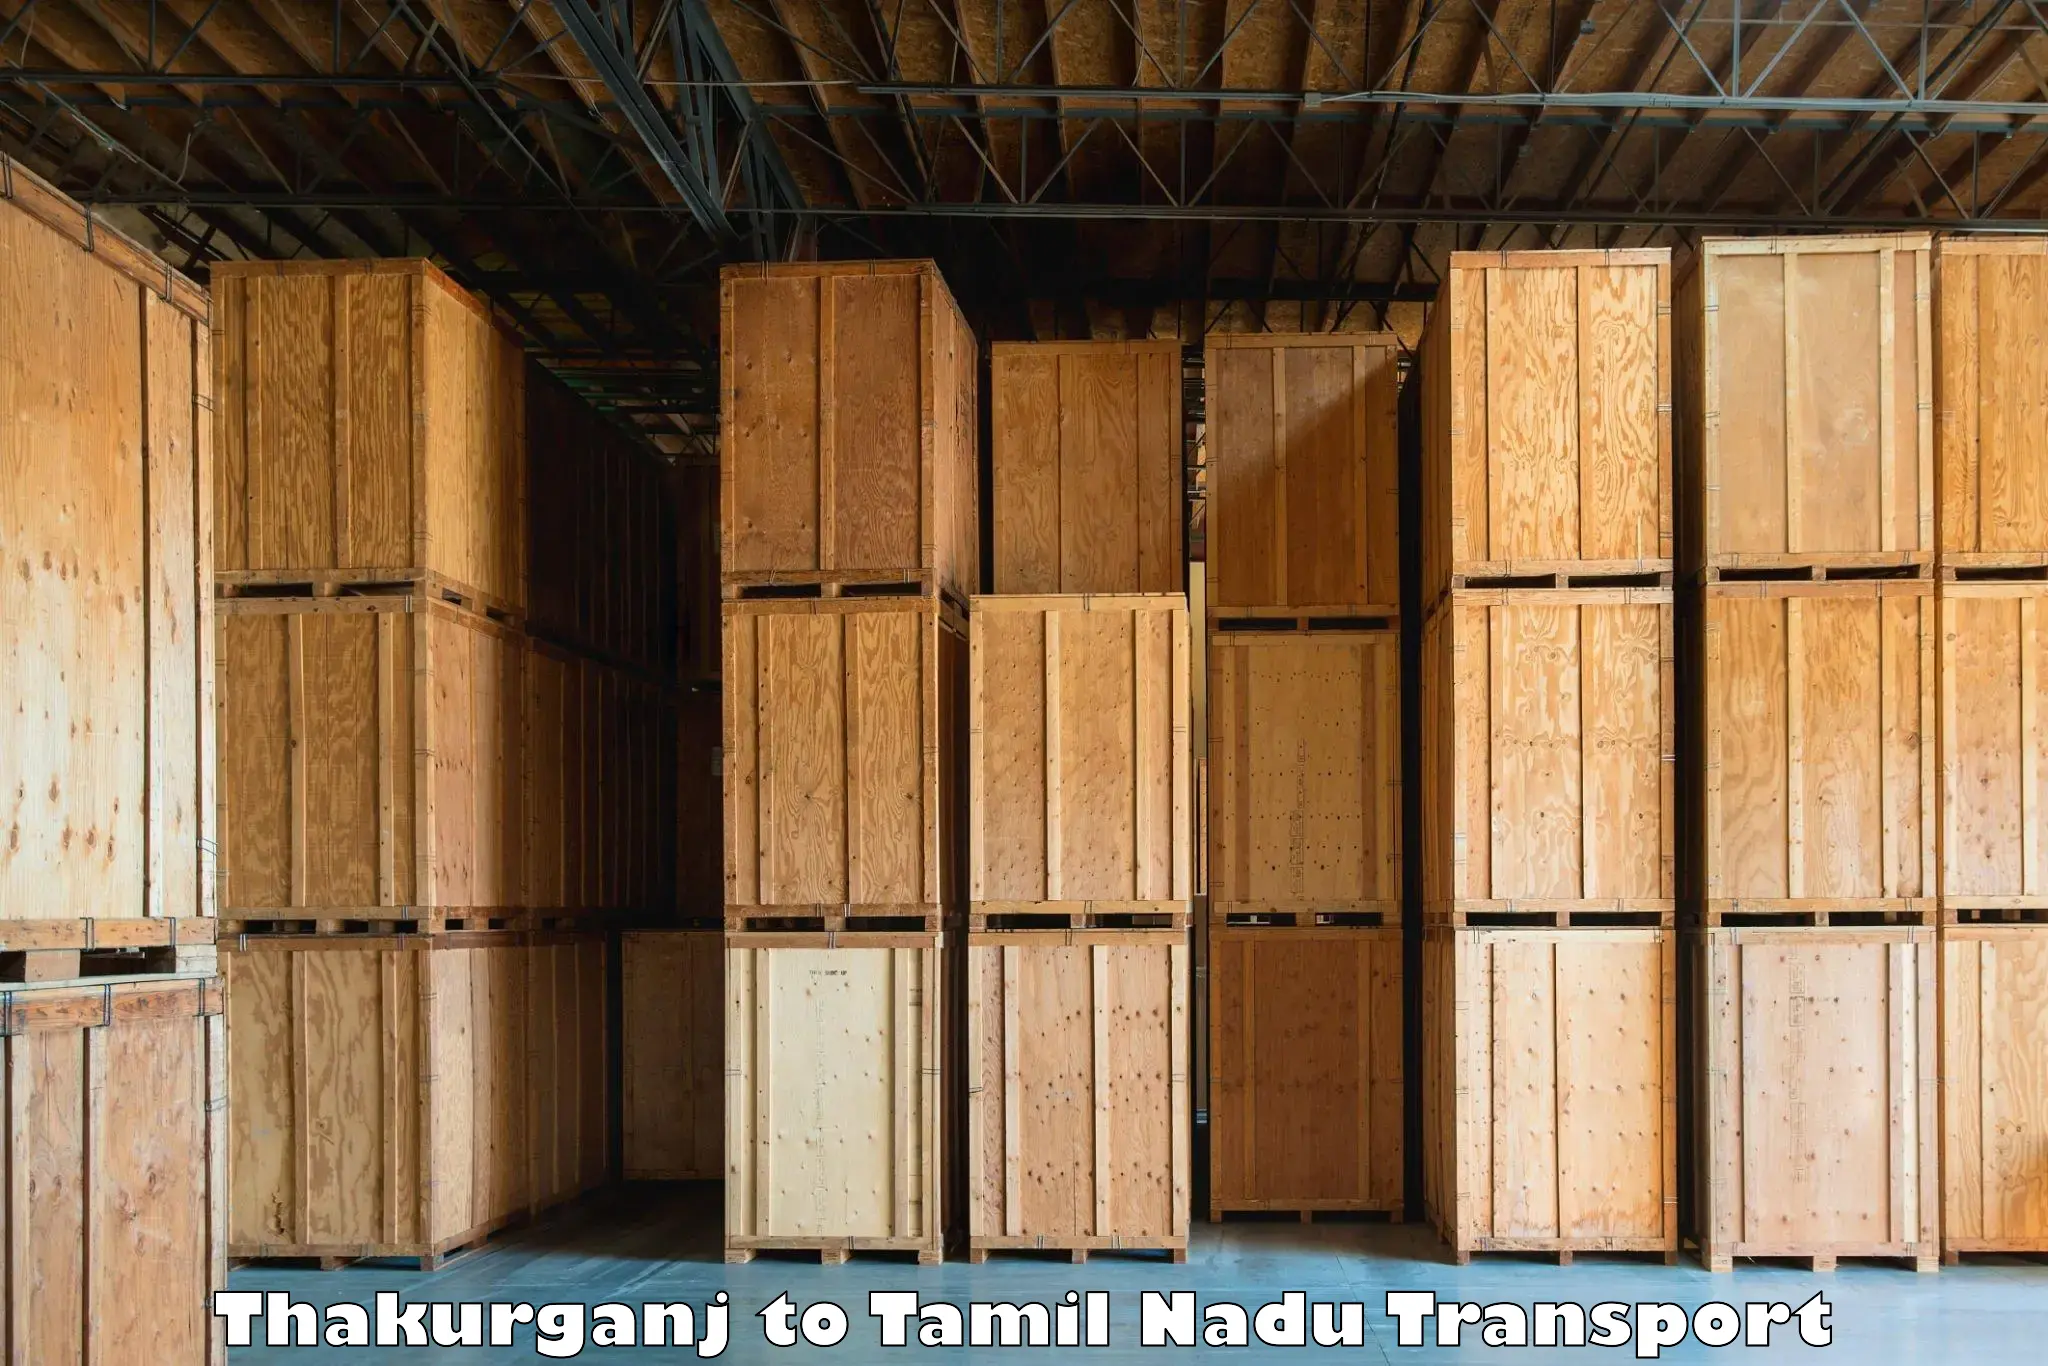 Daily transport service Thakurganj to Srirangam